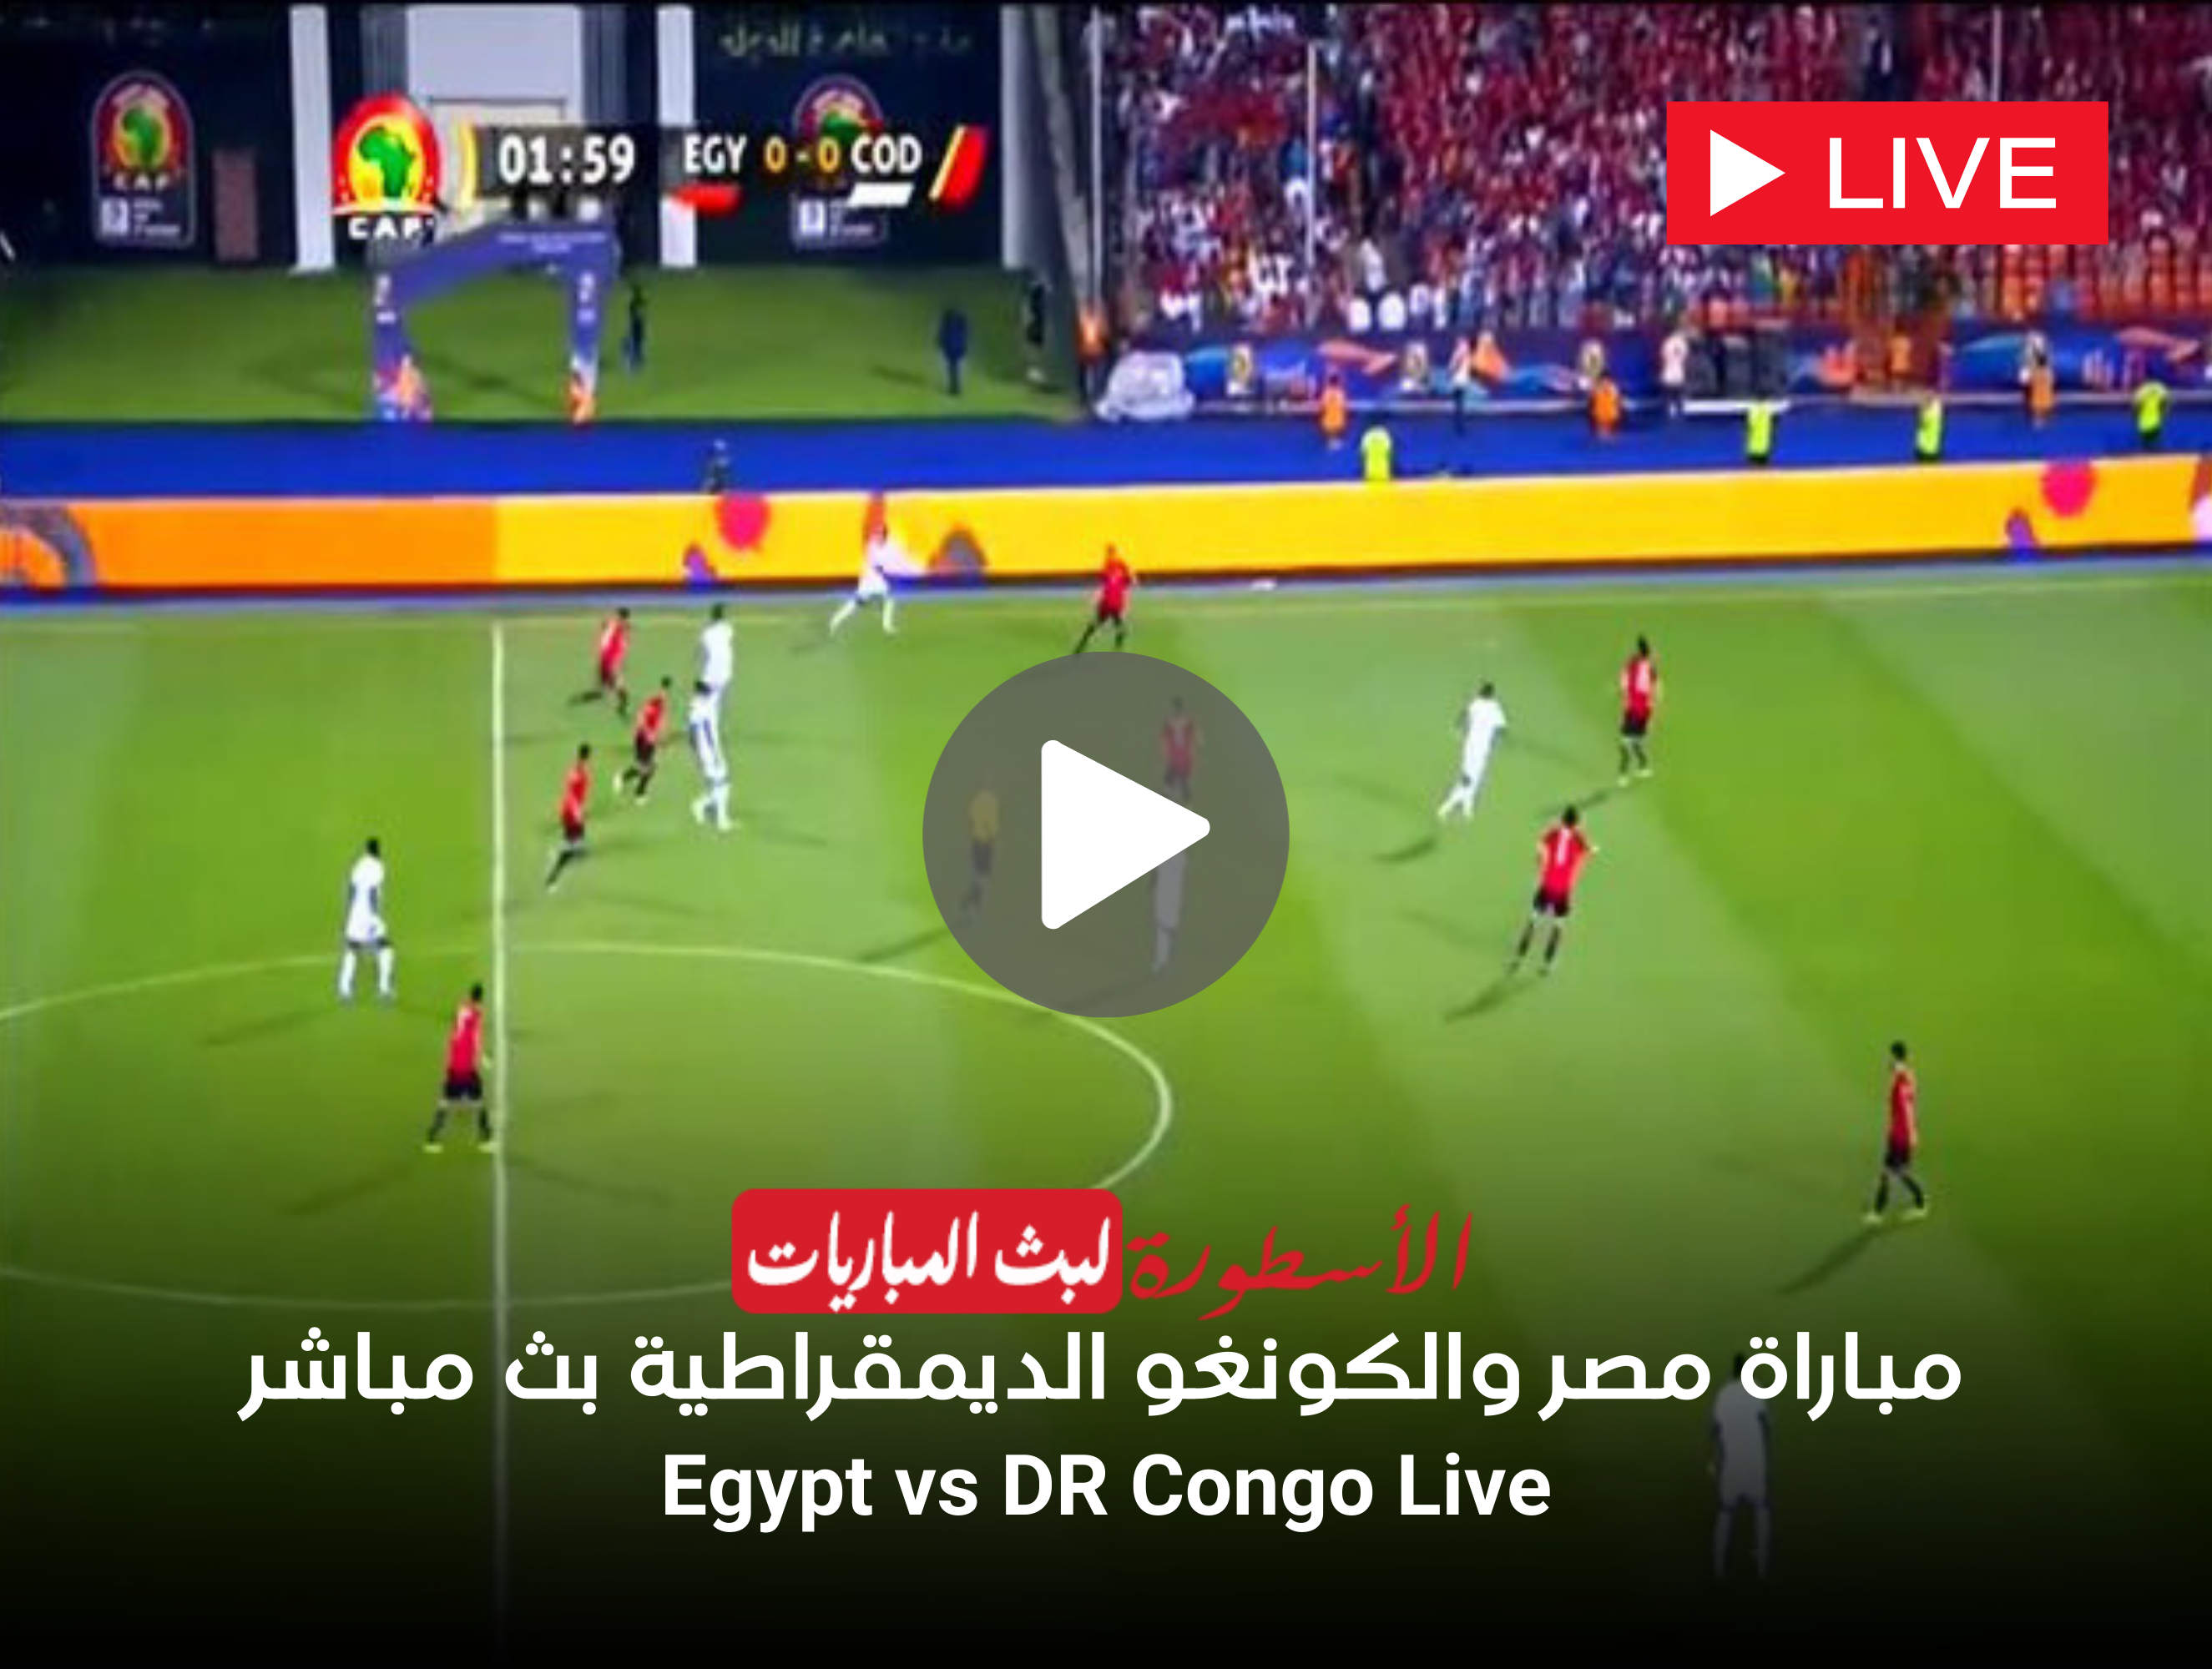 مباراة مصر والكونغو الديمقراطية بث مباشر beIN Sports HD 1 Max كأس أمم أفريقيا لايف الآن